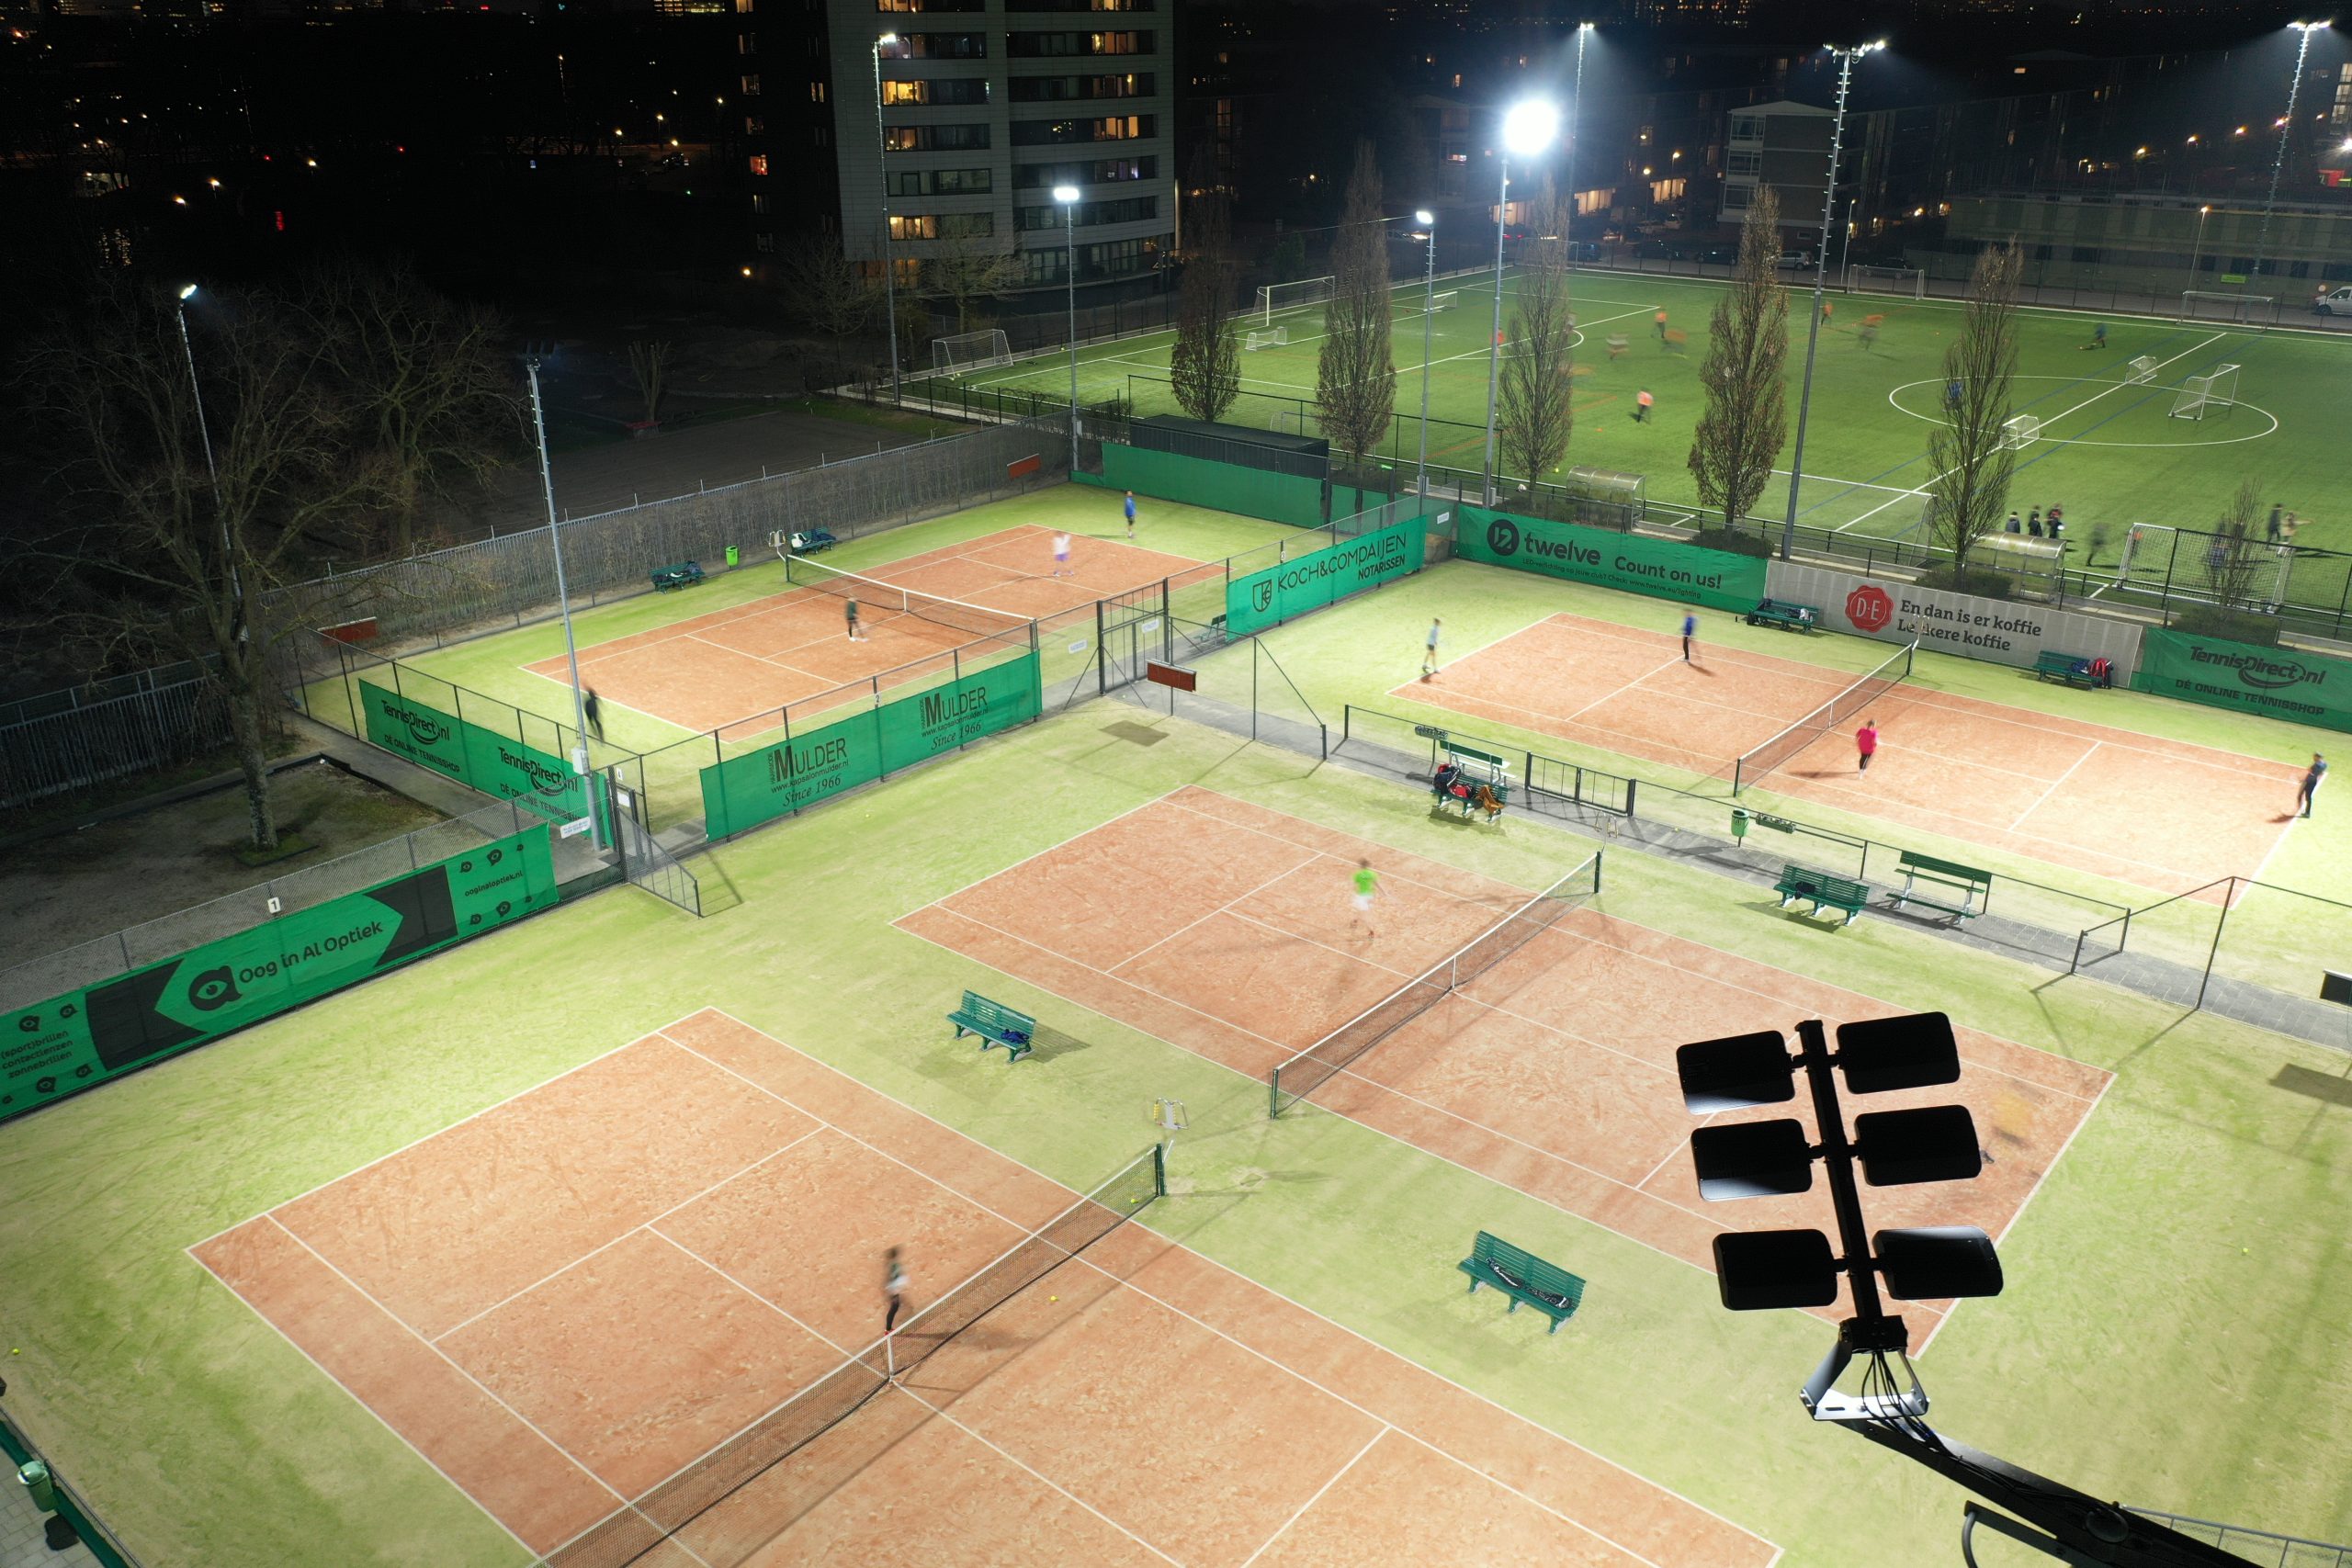 Tennisbaanverlichting - Firefly - ledverlichting